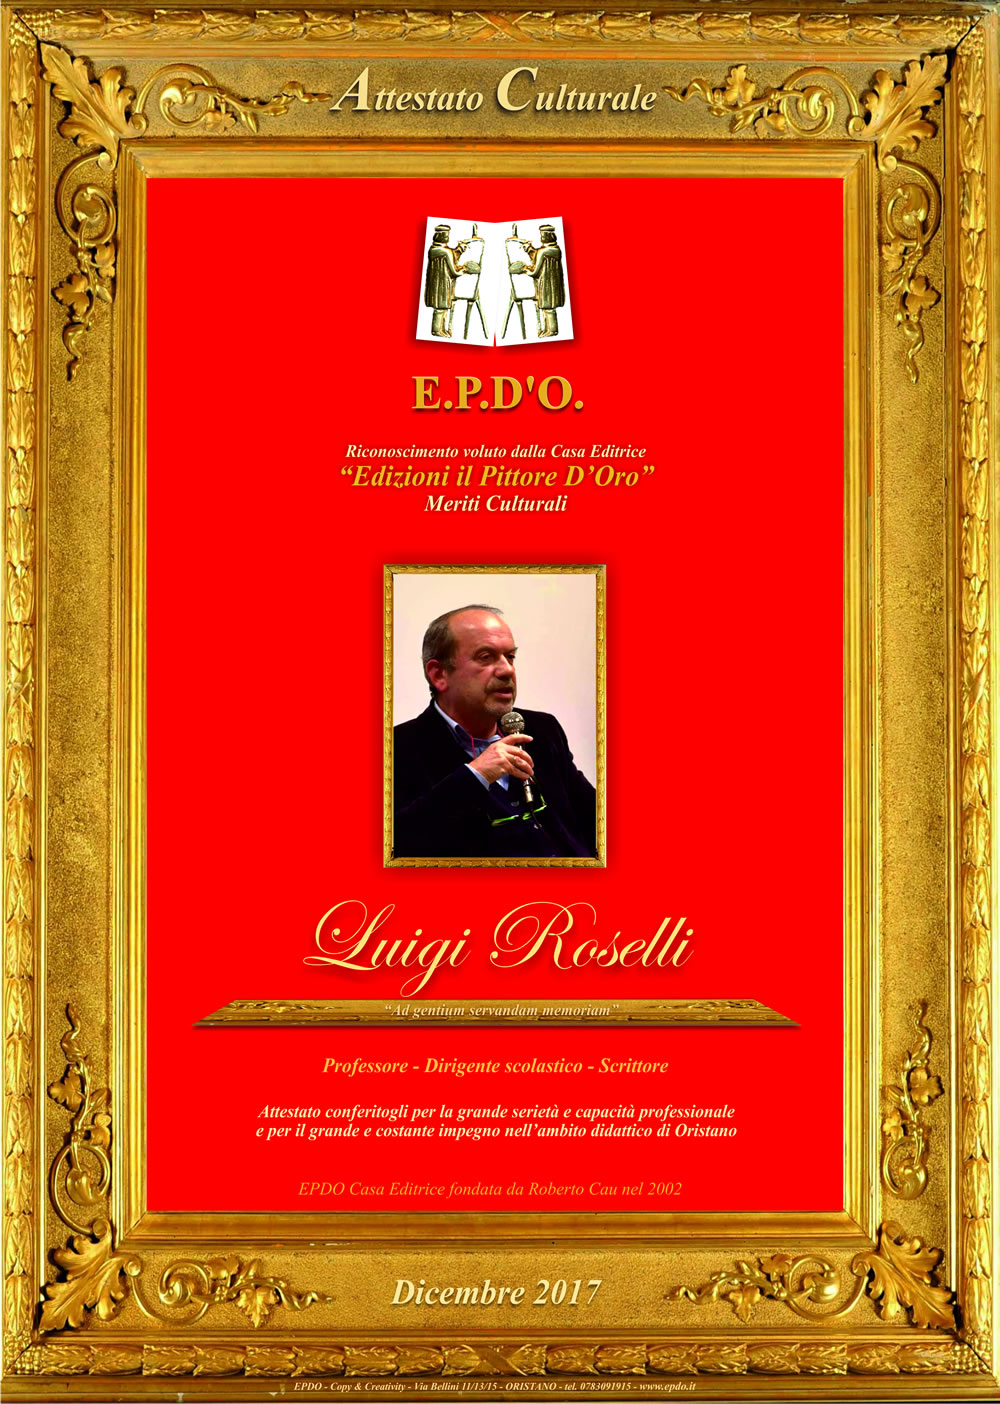 EPDO - Attestato Culturale Luigi Roselli